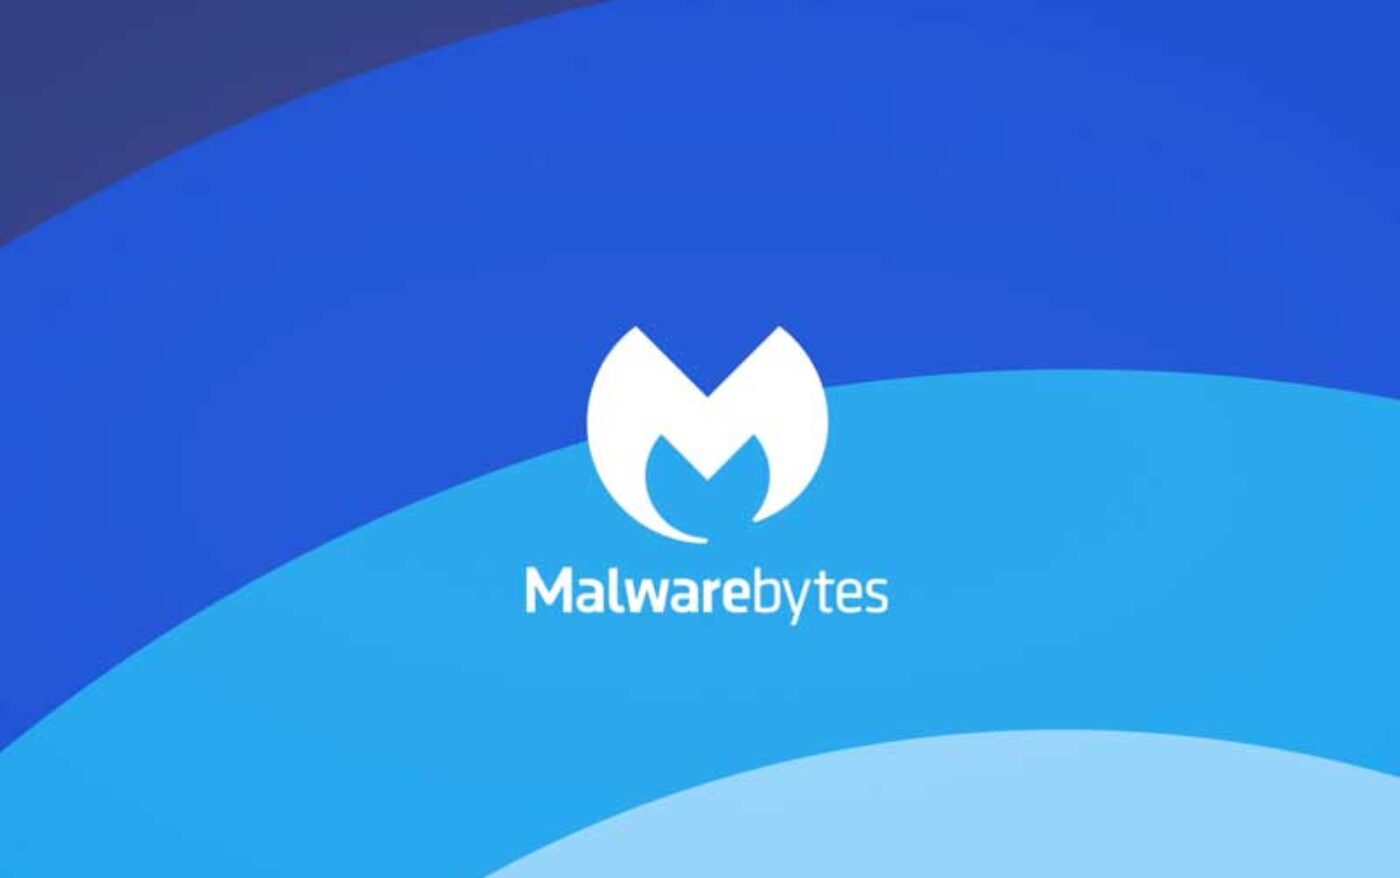 Malwarebytes: Proteção confiável contra ameaças digitais